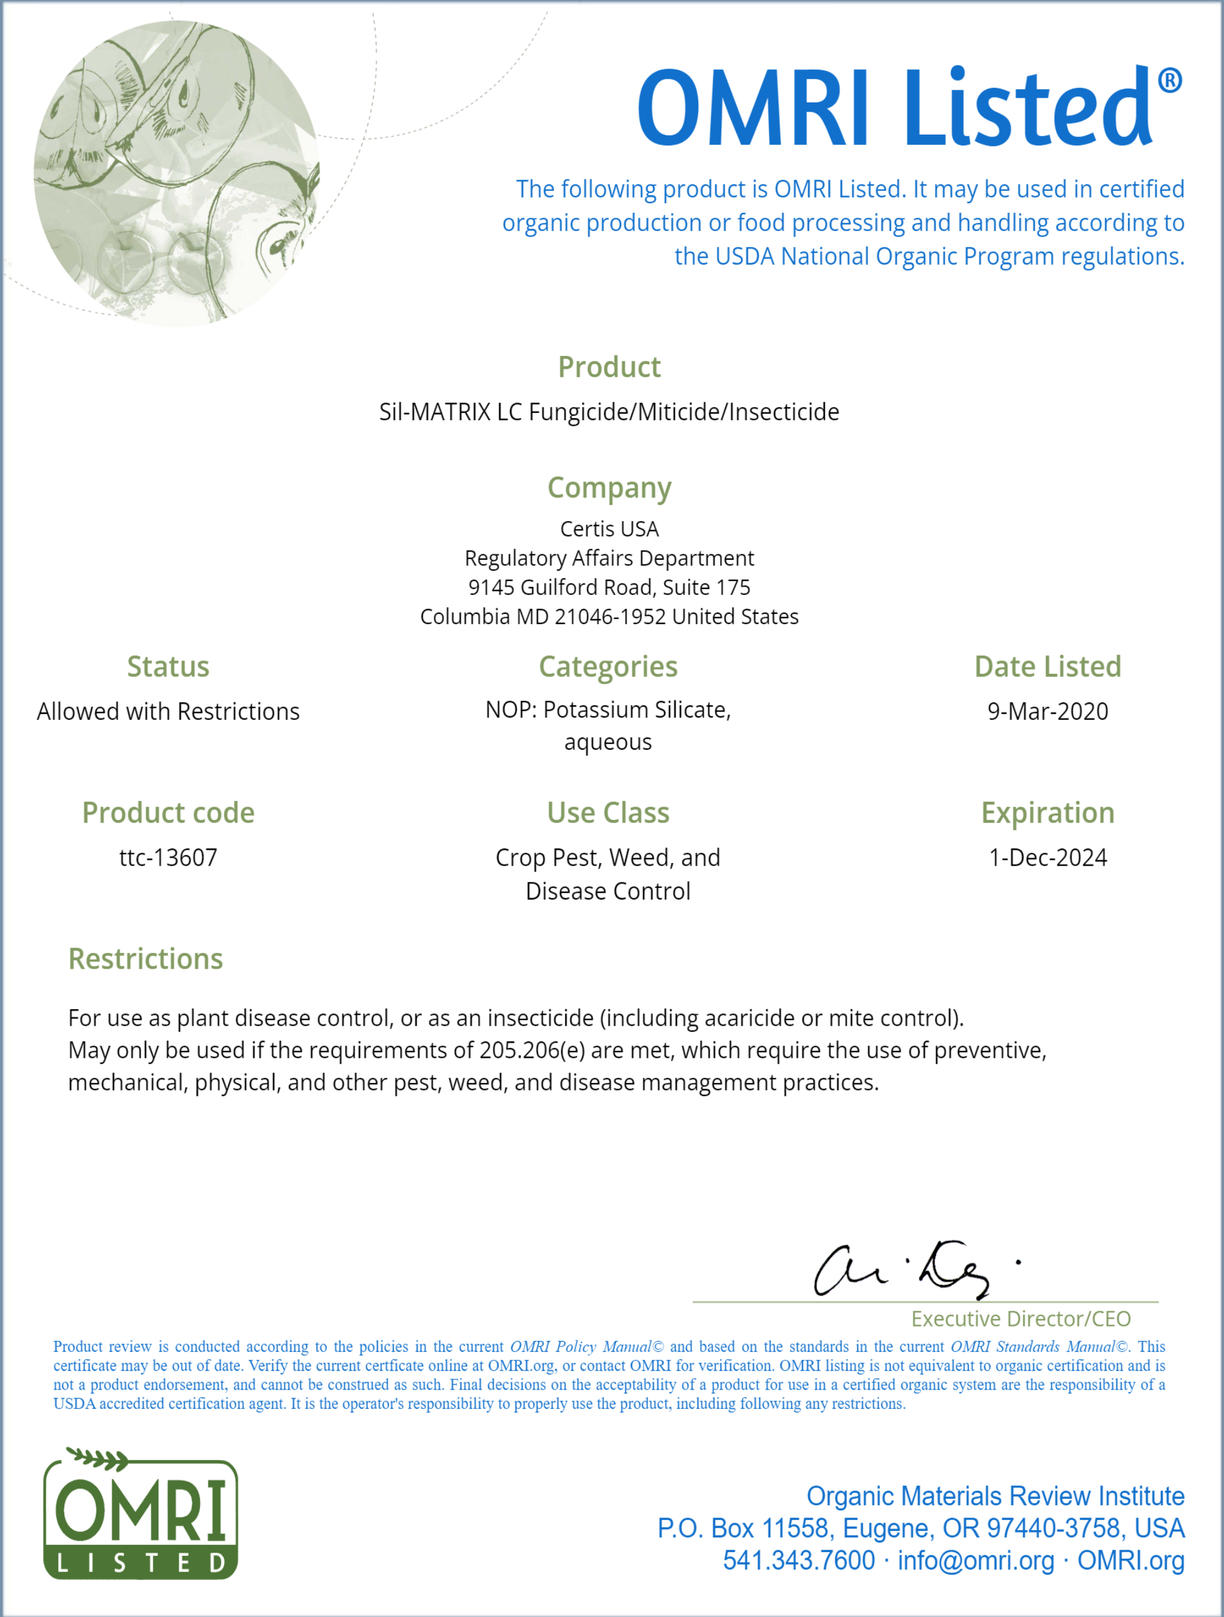 Certis Sil-Matrix LC OMRI listed